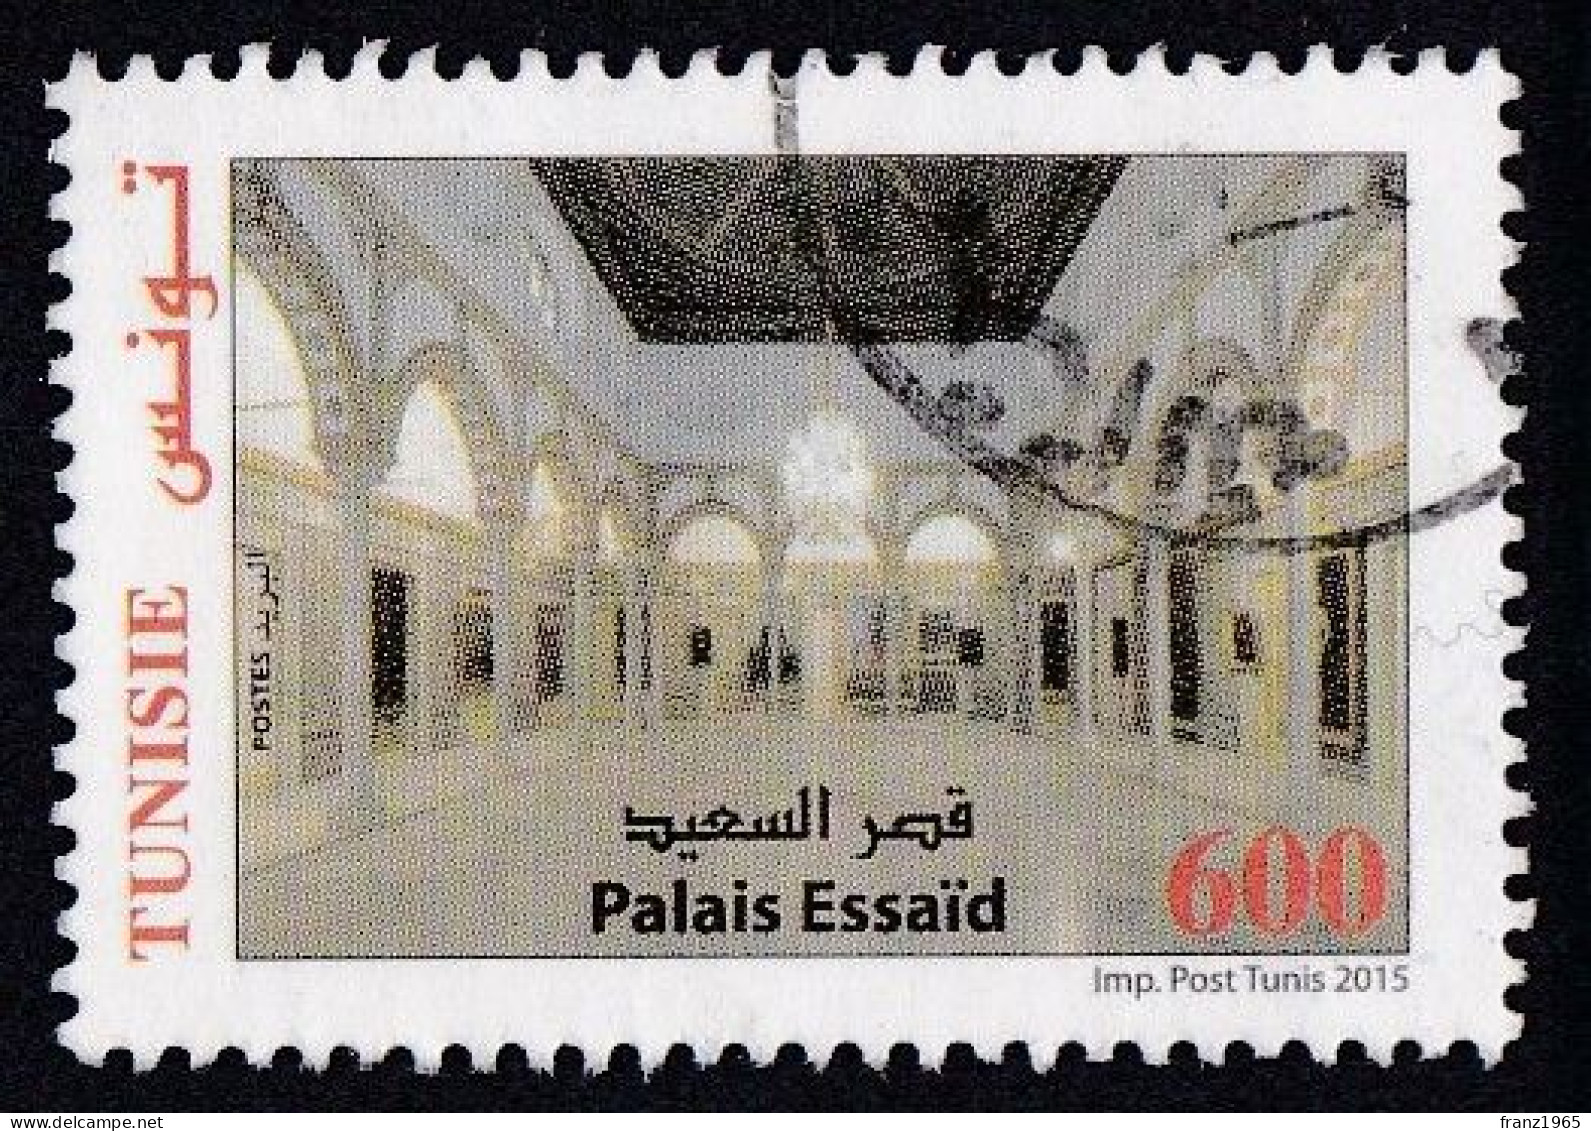 Essaid Palace - 2014 - Tunisia (1956-...)